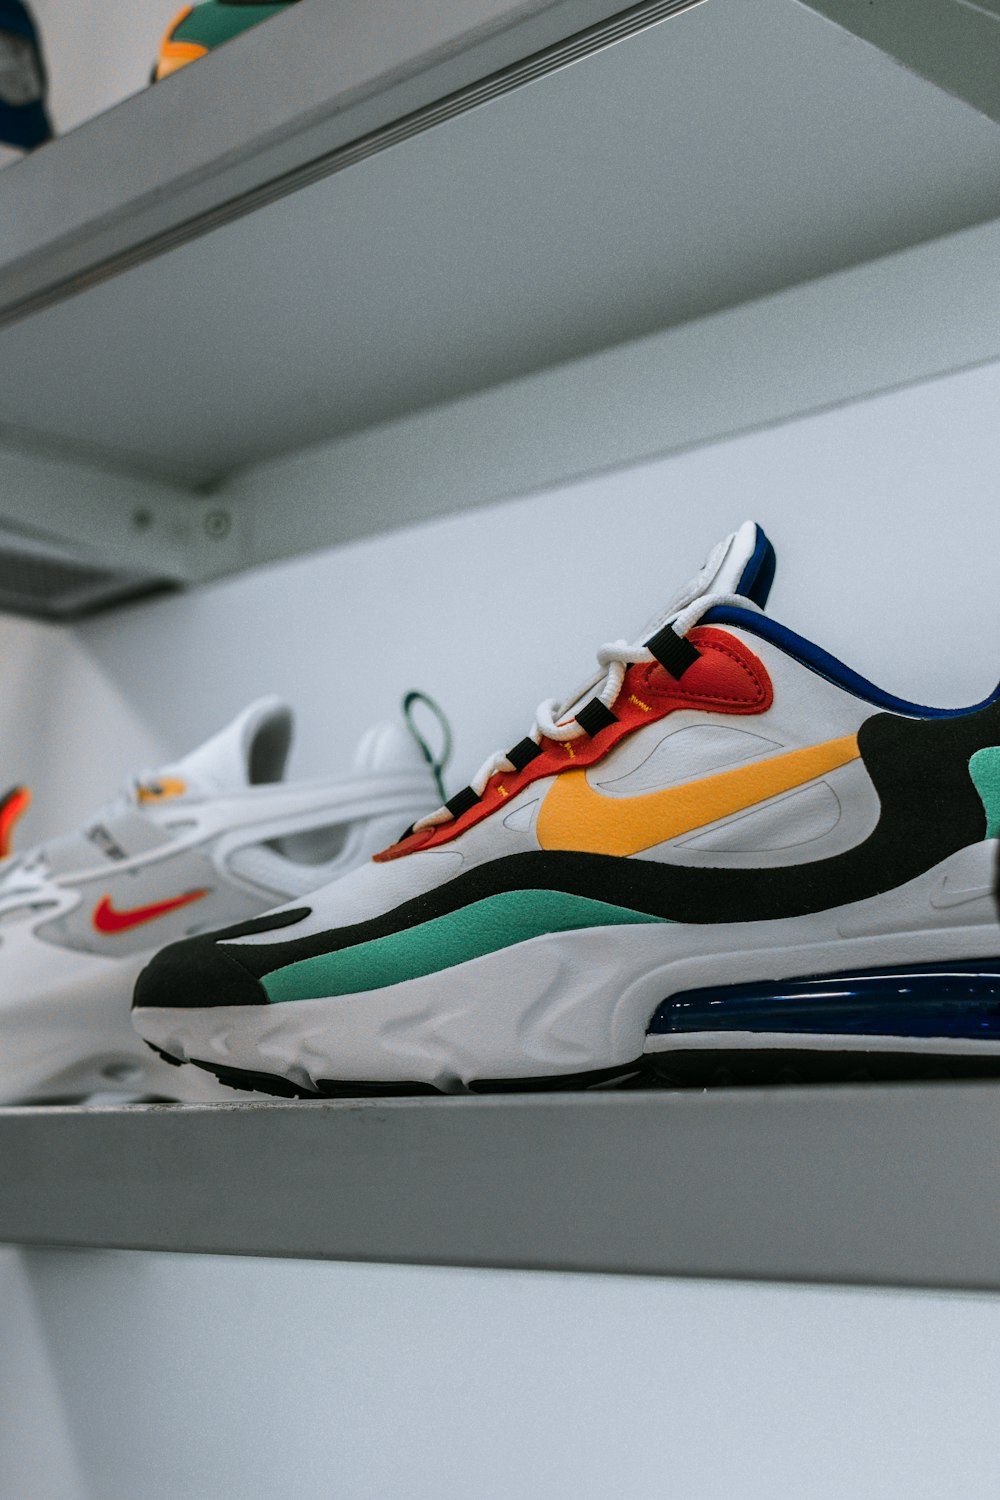 weißer und mehrfarbiger Nike Air Max Schuh im Regal